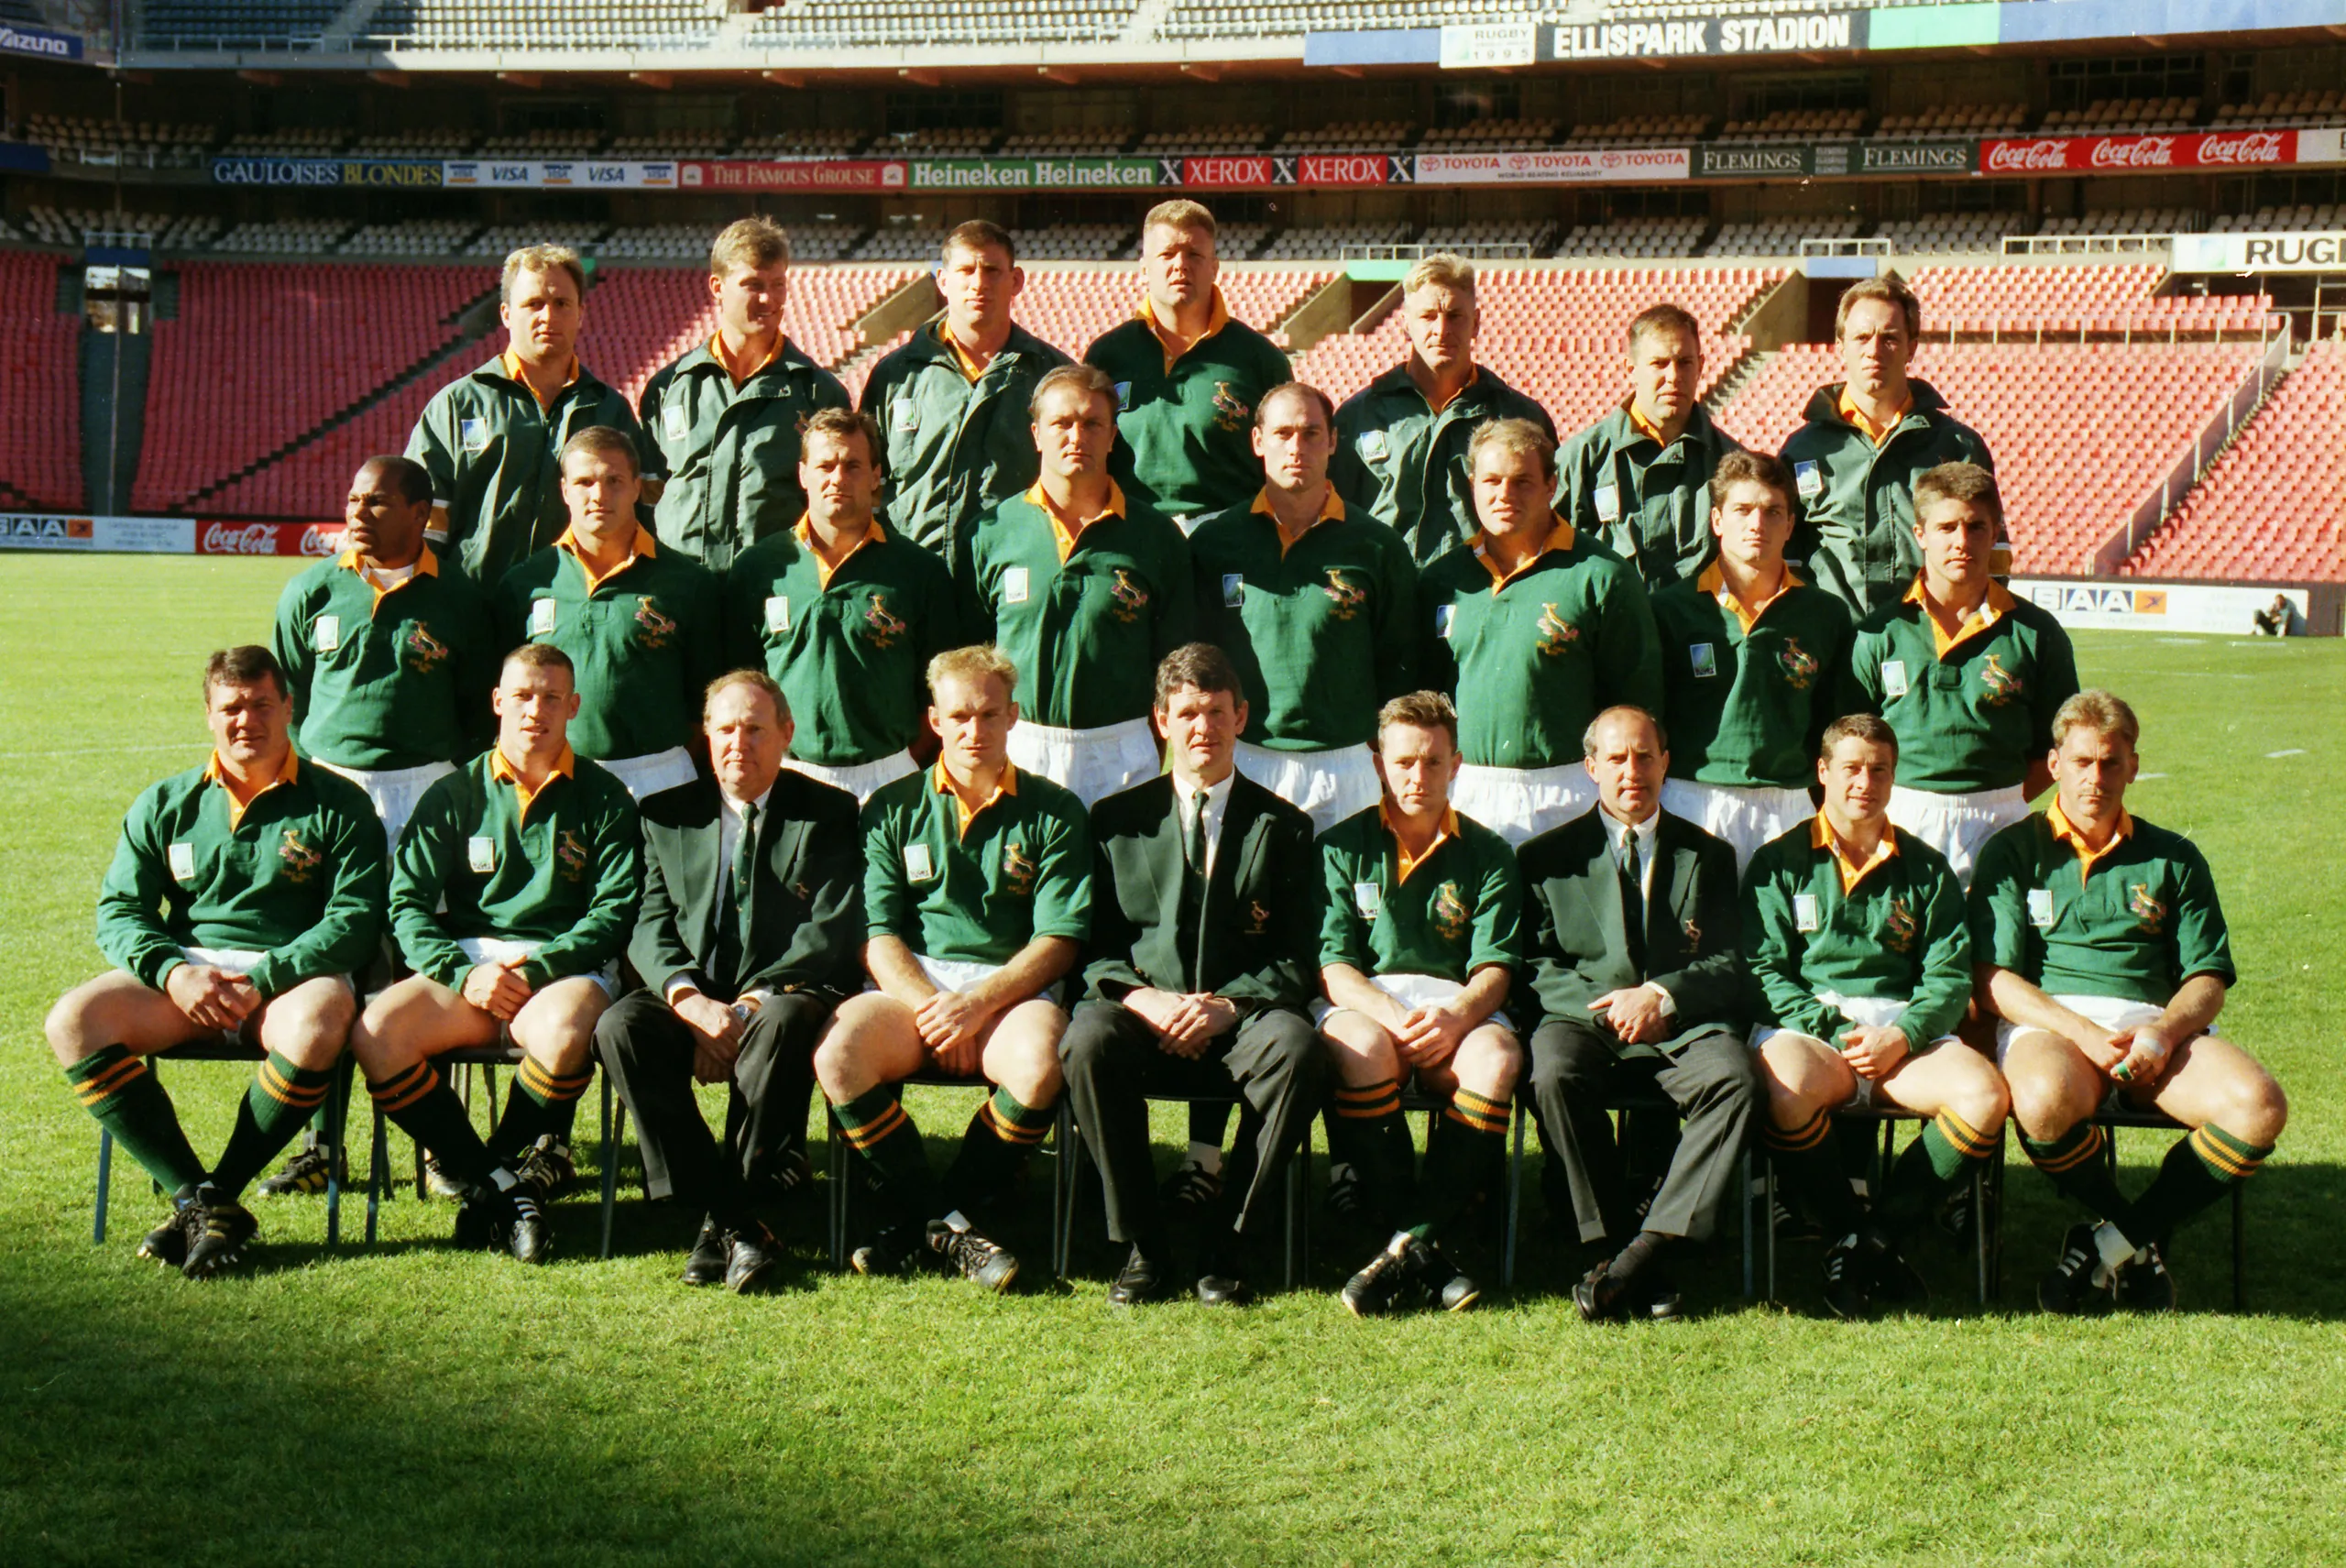 1995 Springbok Team